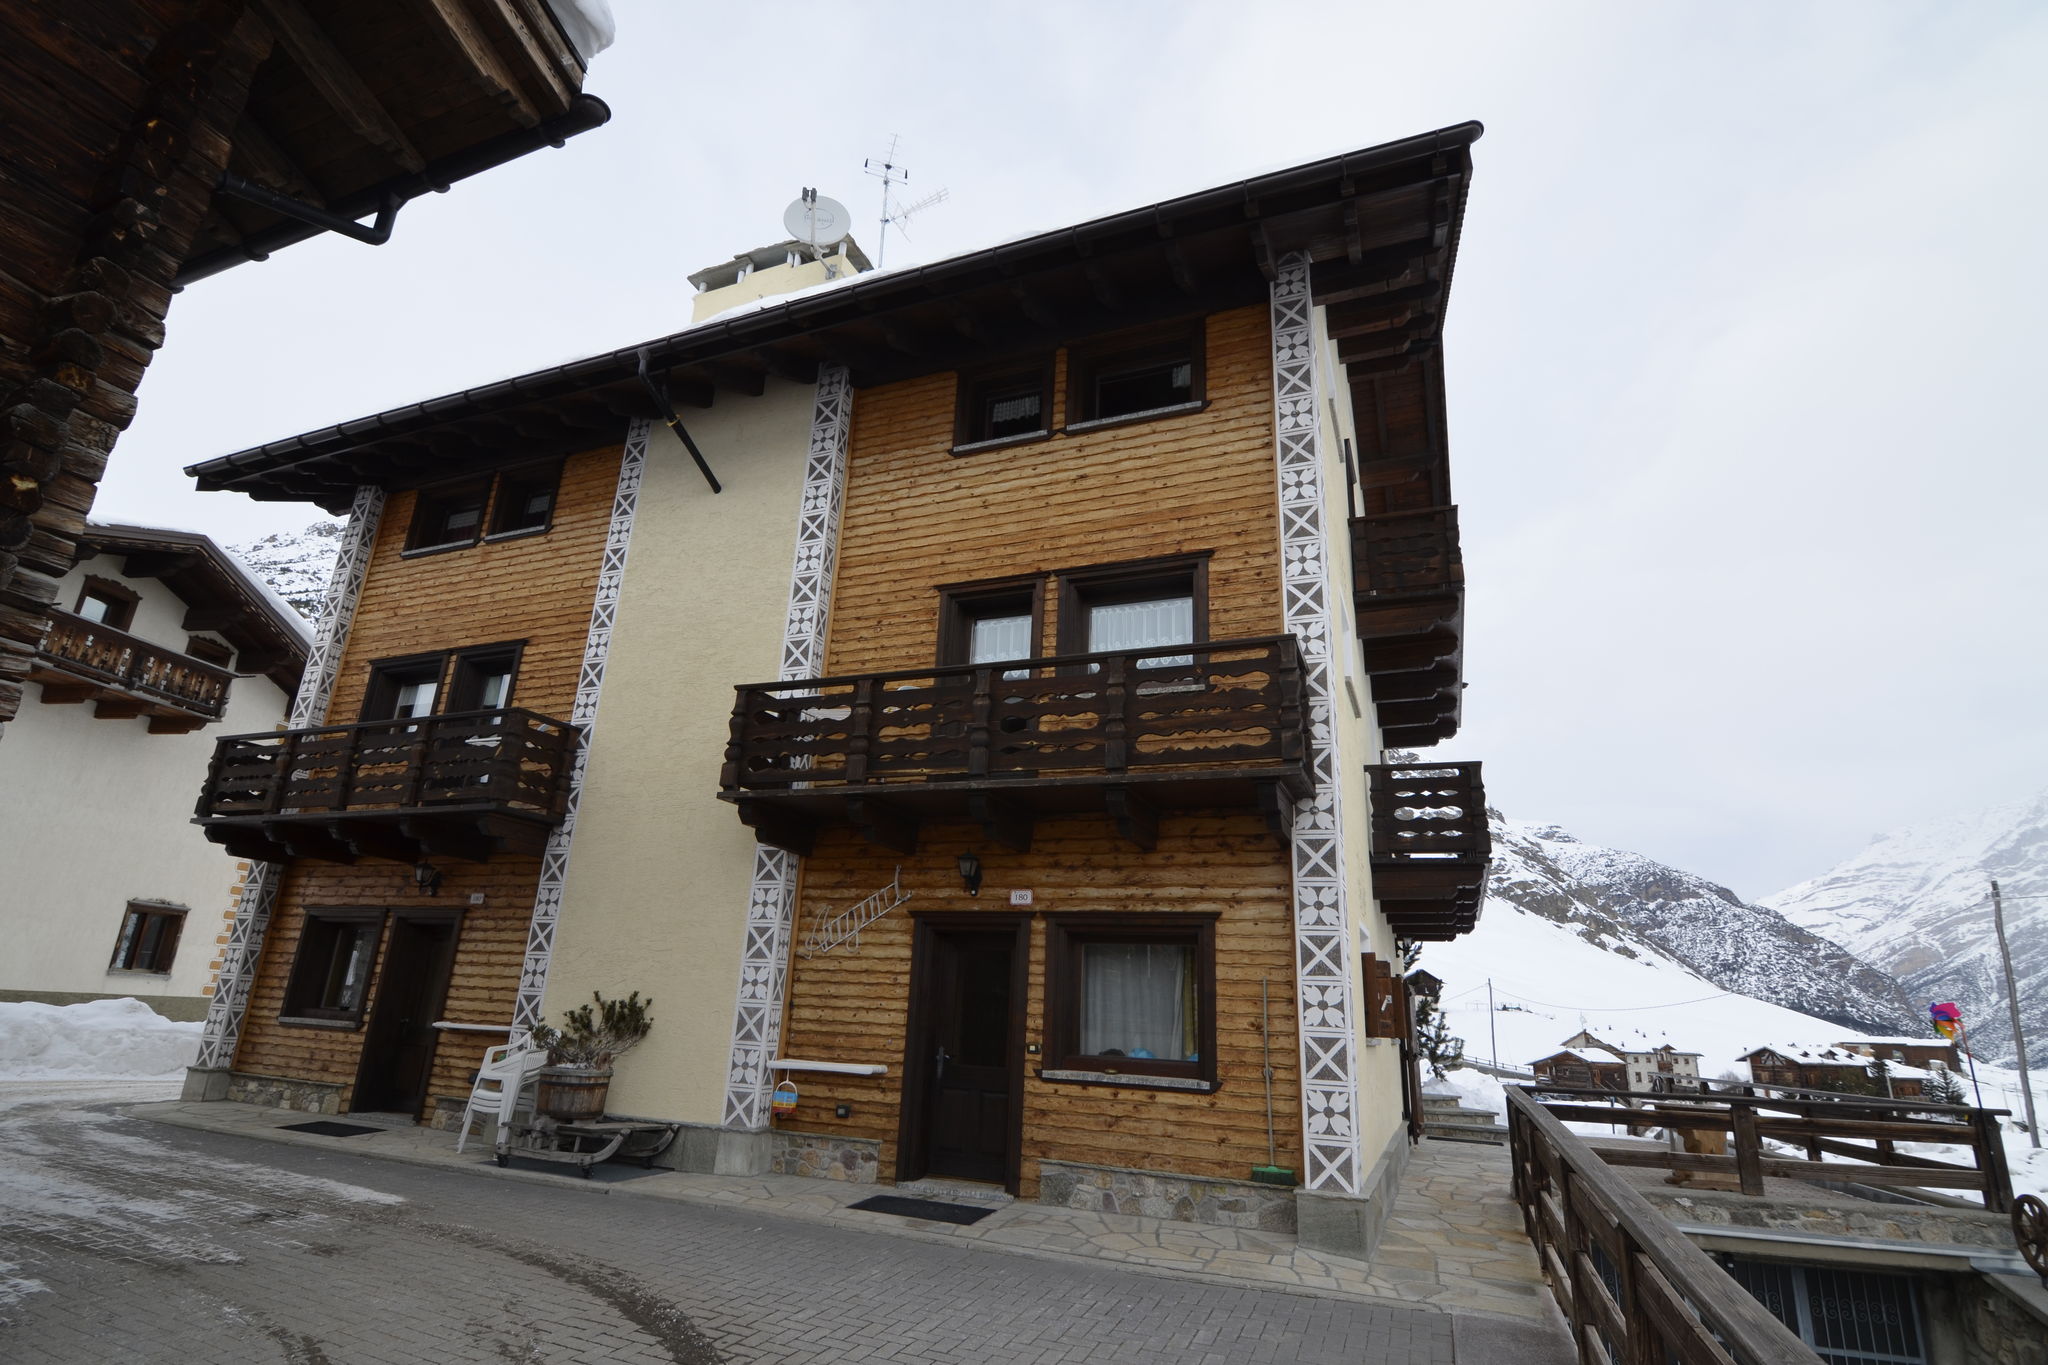 Gezellig vakantiehuis in Livigno, Italië nabij het skigebied